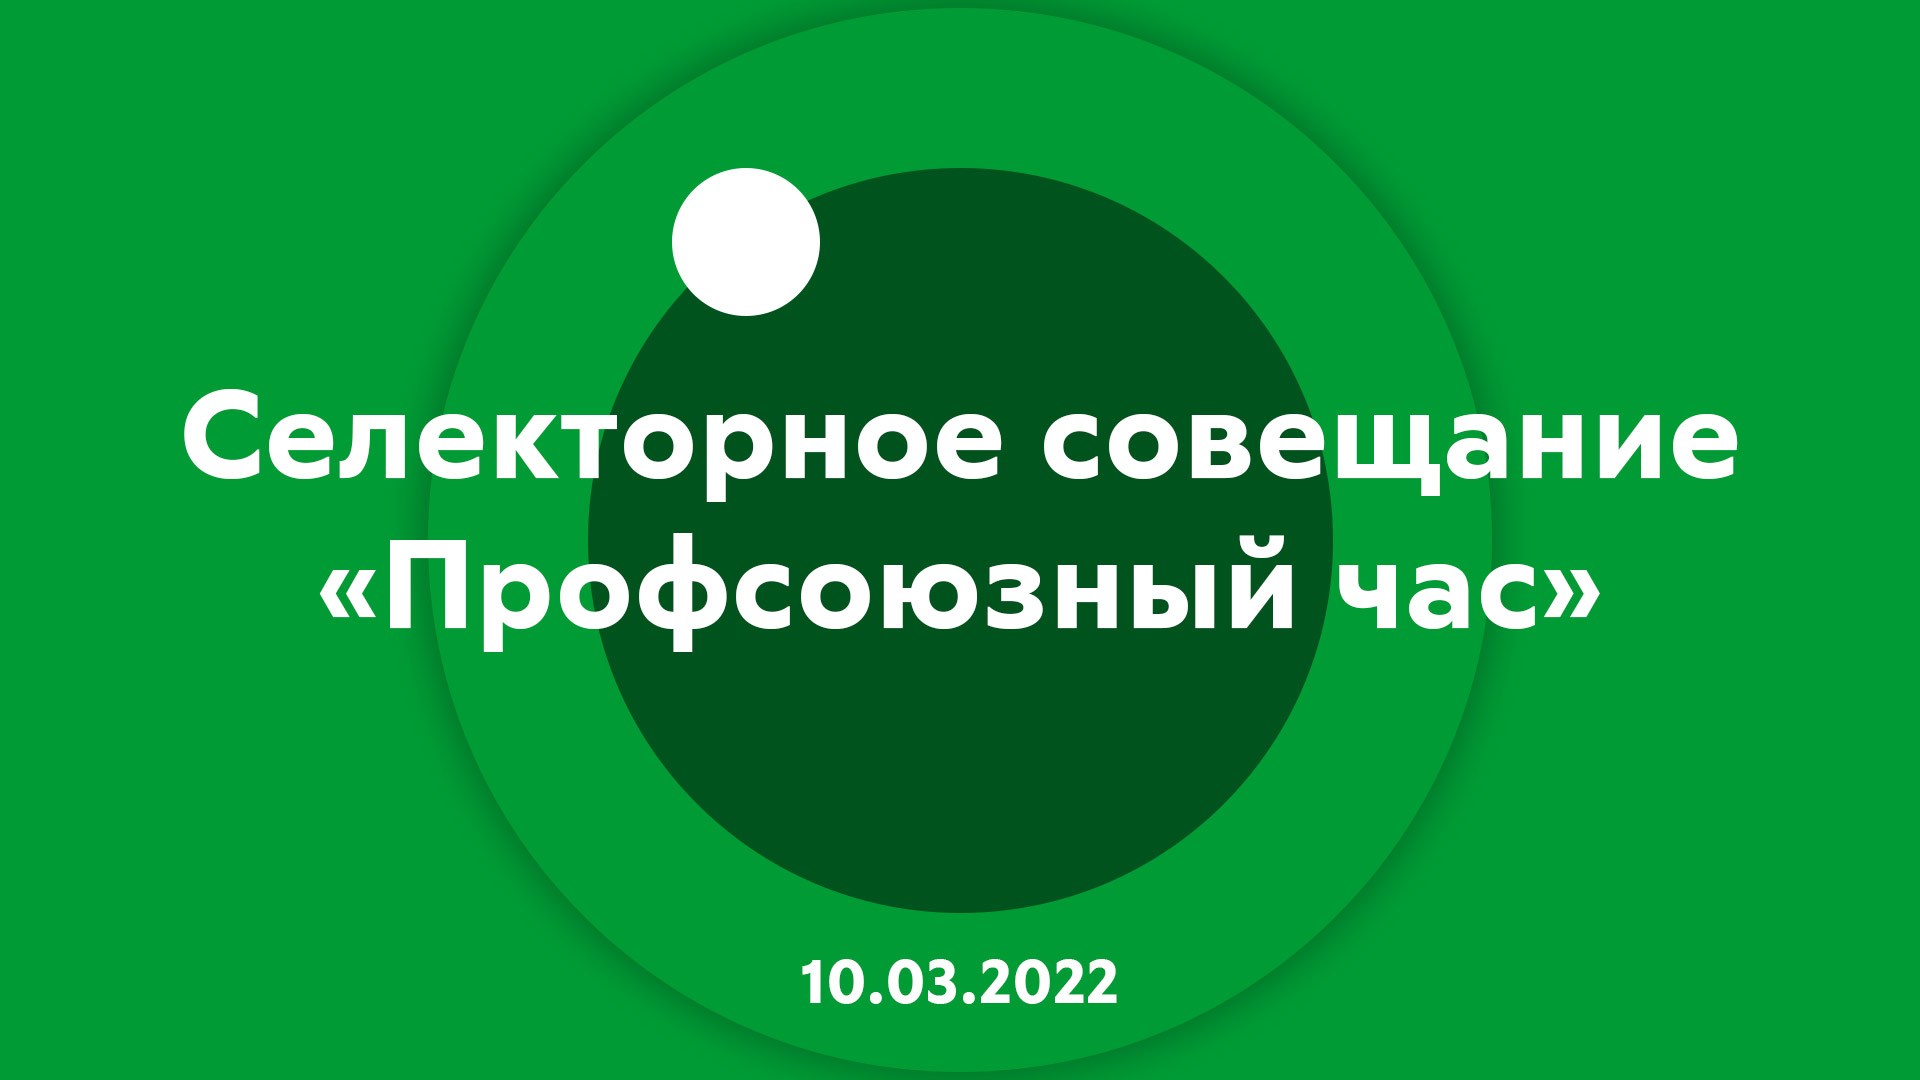 Селекторное совещание "Профсоюзный час" 10.03.2022